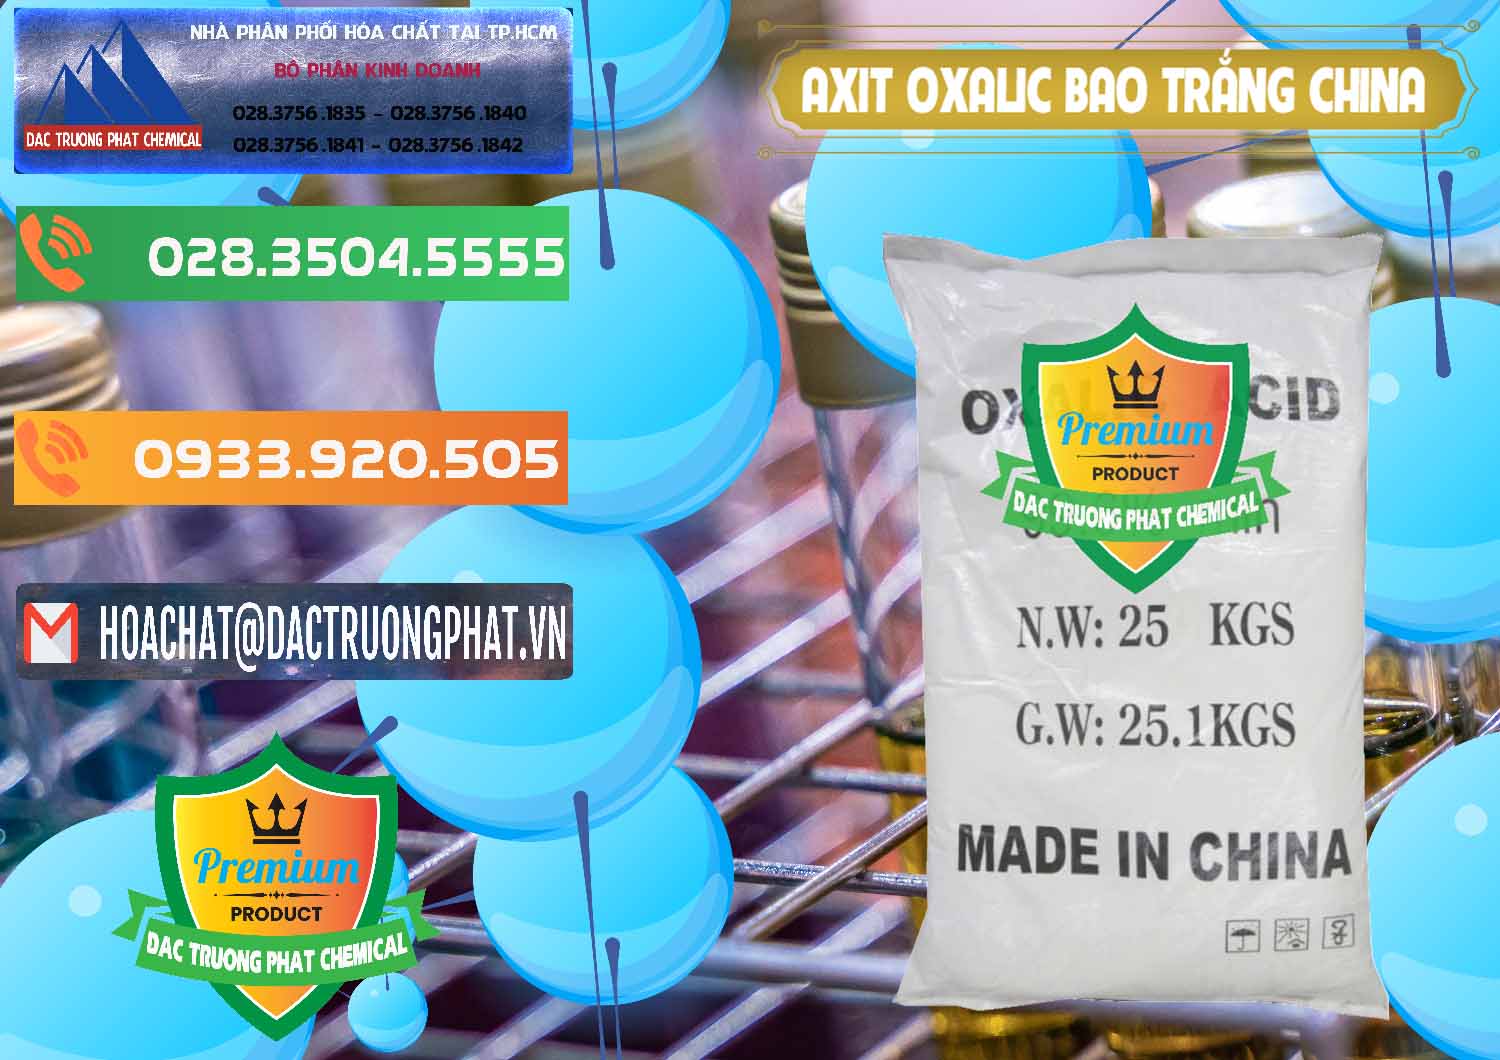 Đơn vị phân phối ( bán ) Acid Oxalic – Axit Oxalic 99.6% Bao Trắng Trung Quốc China - 0270 - Chuyên cung cấp ( kinh doanh ) hóa chất tại TP.HCM - hoachatxulynuoc.com.vn